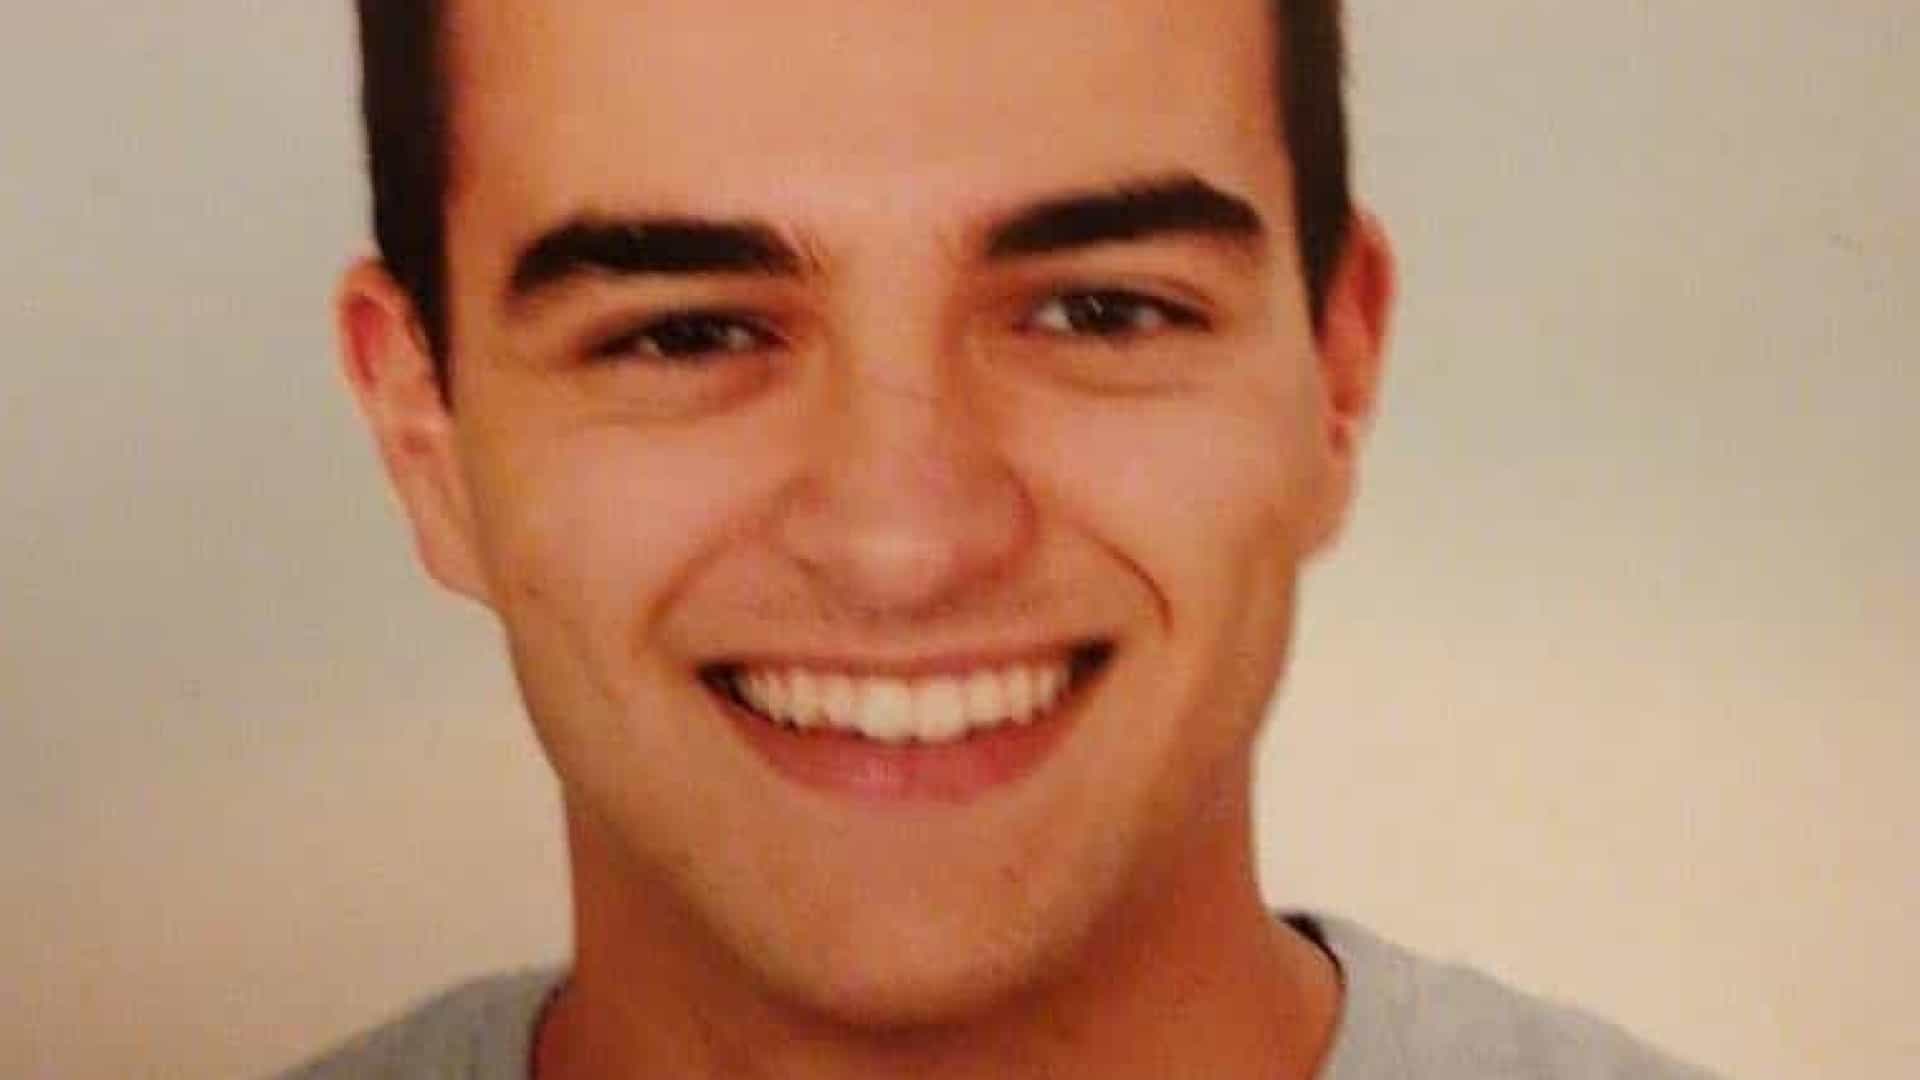 Imprensa checa diz que estudante de Medicina desaparecido na República Checa foi encontrado morto